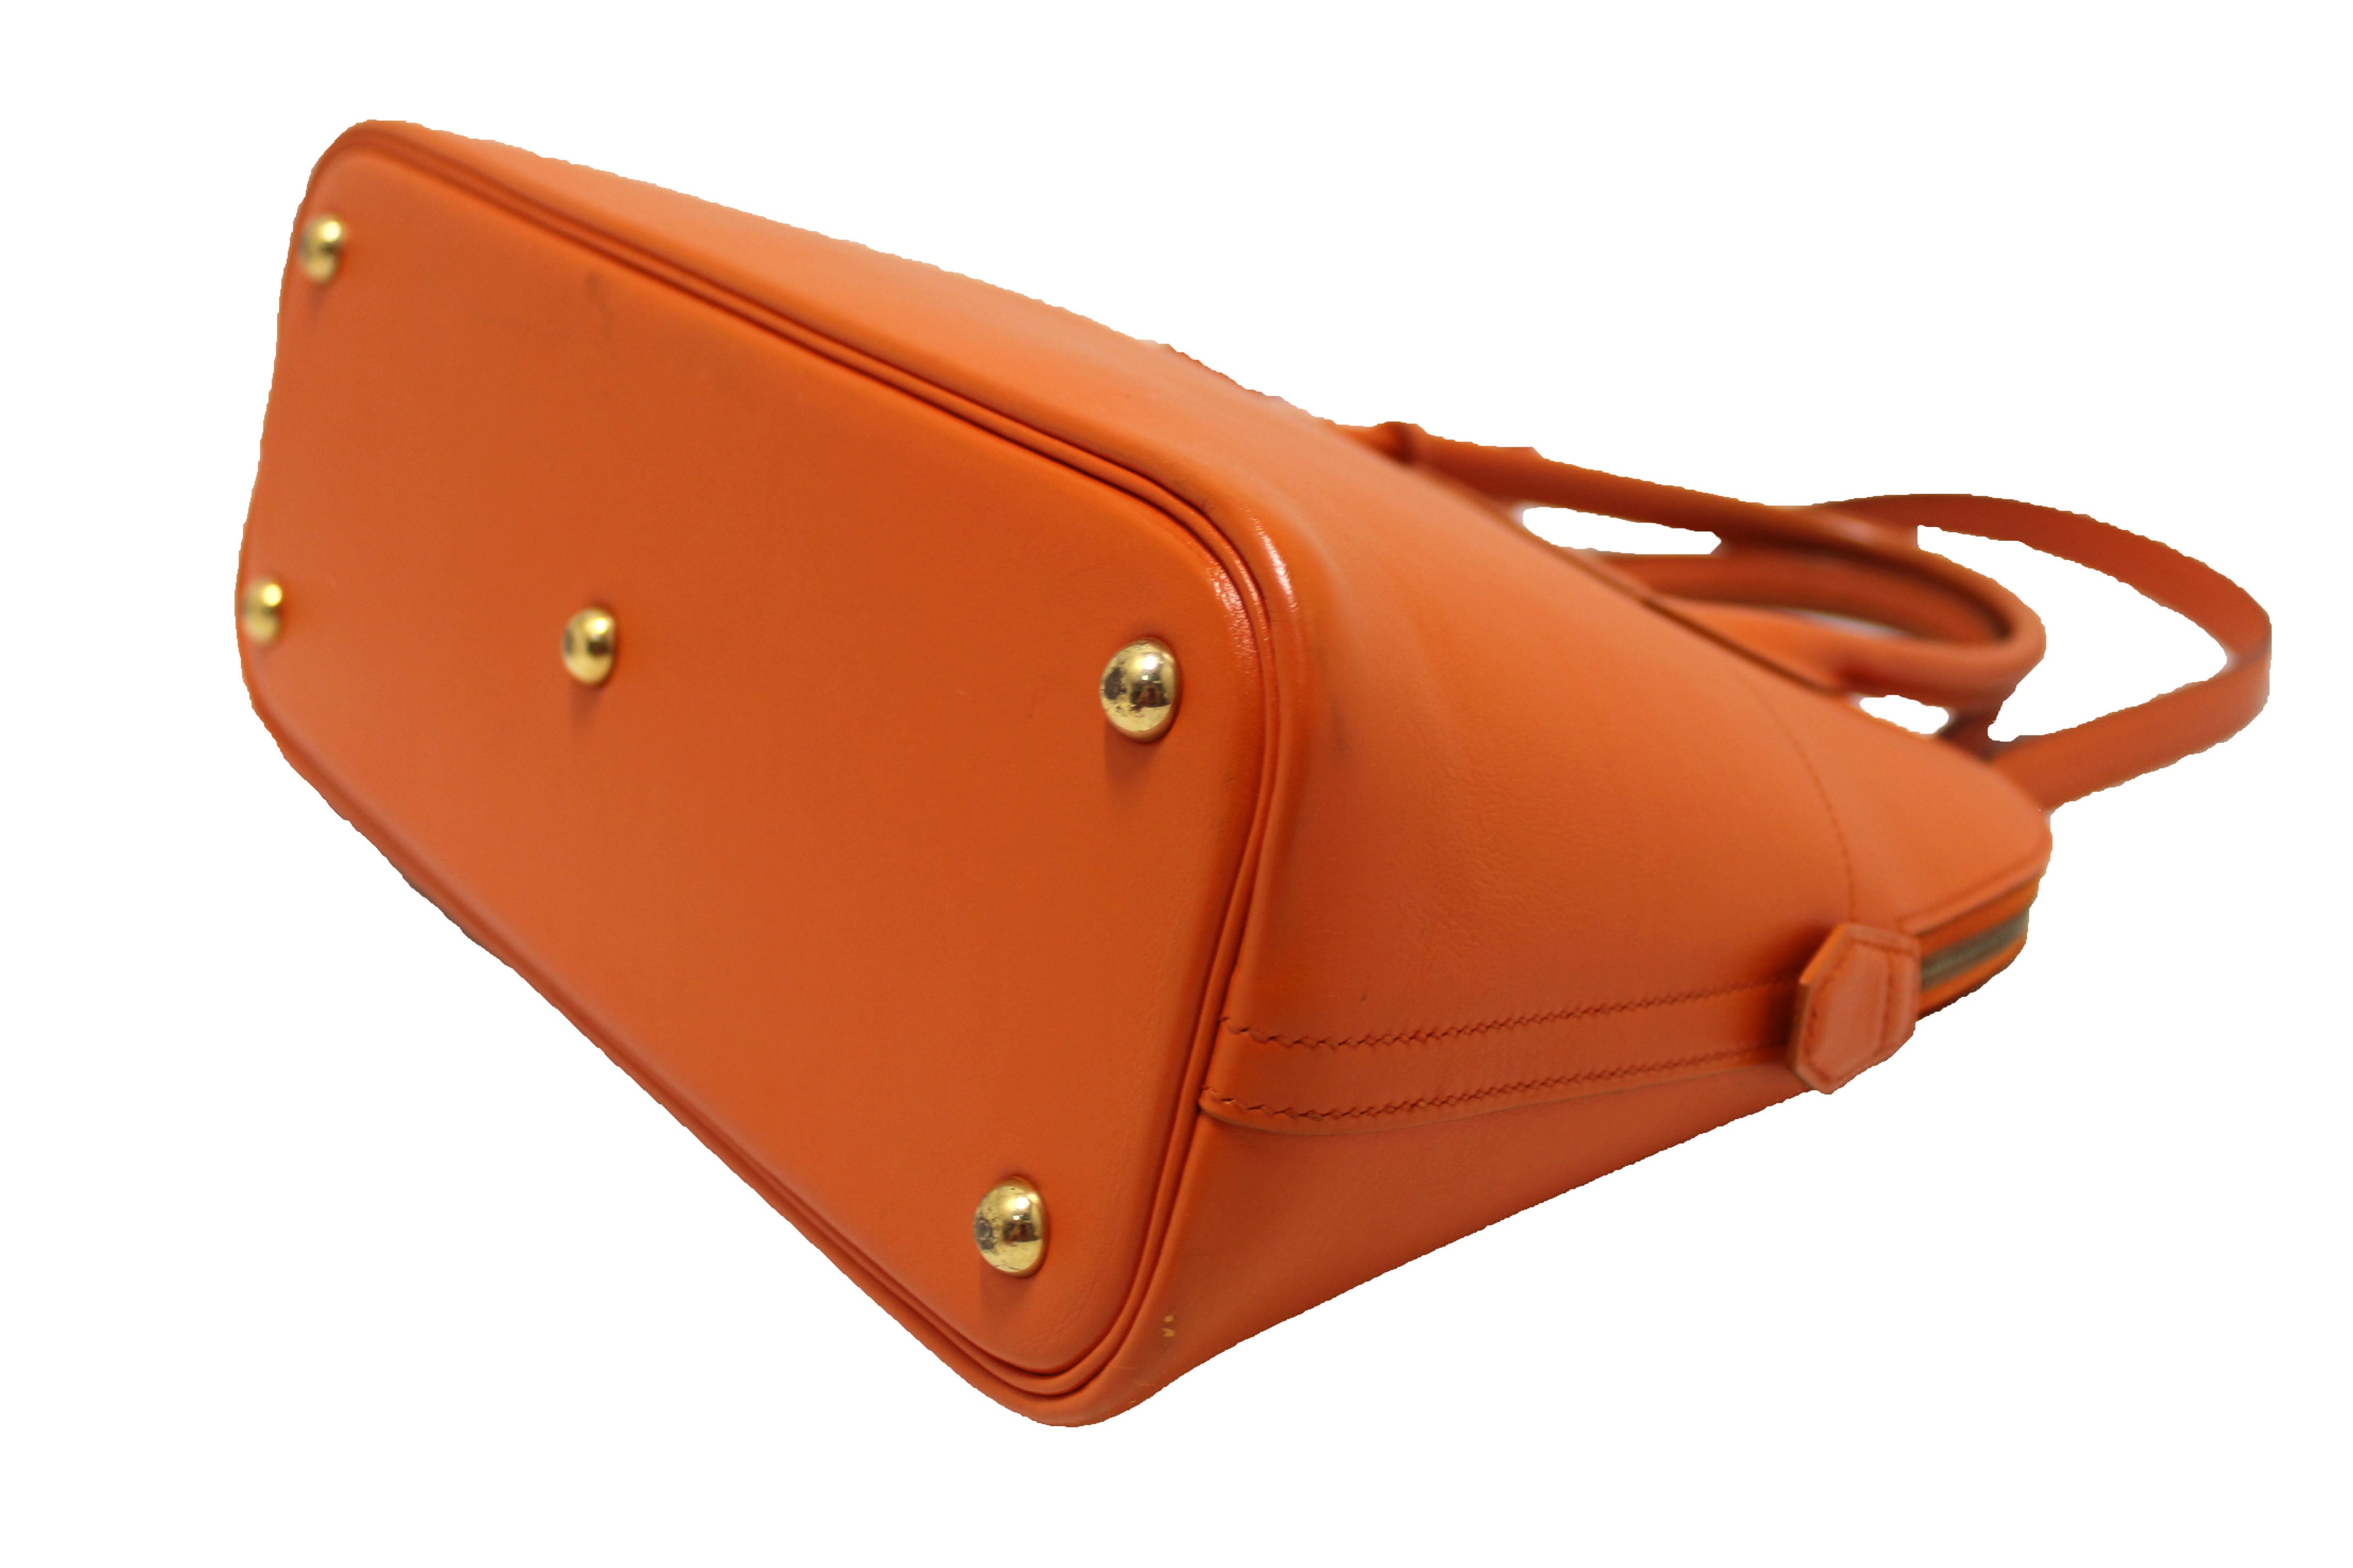 Authentic Hermes Orange Bolide 31 Box Calf Leather Handbag/Shoulder Bag